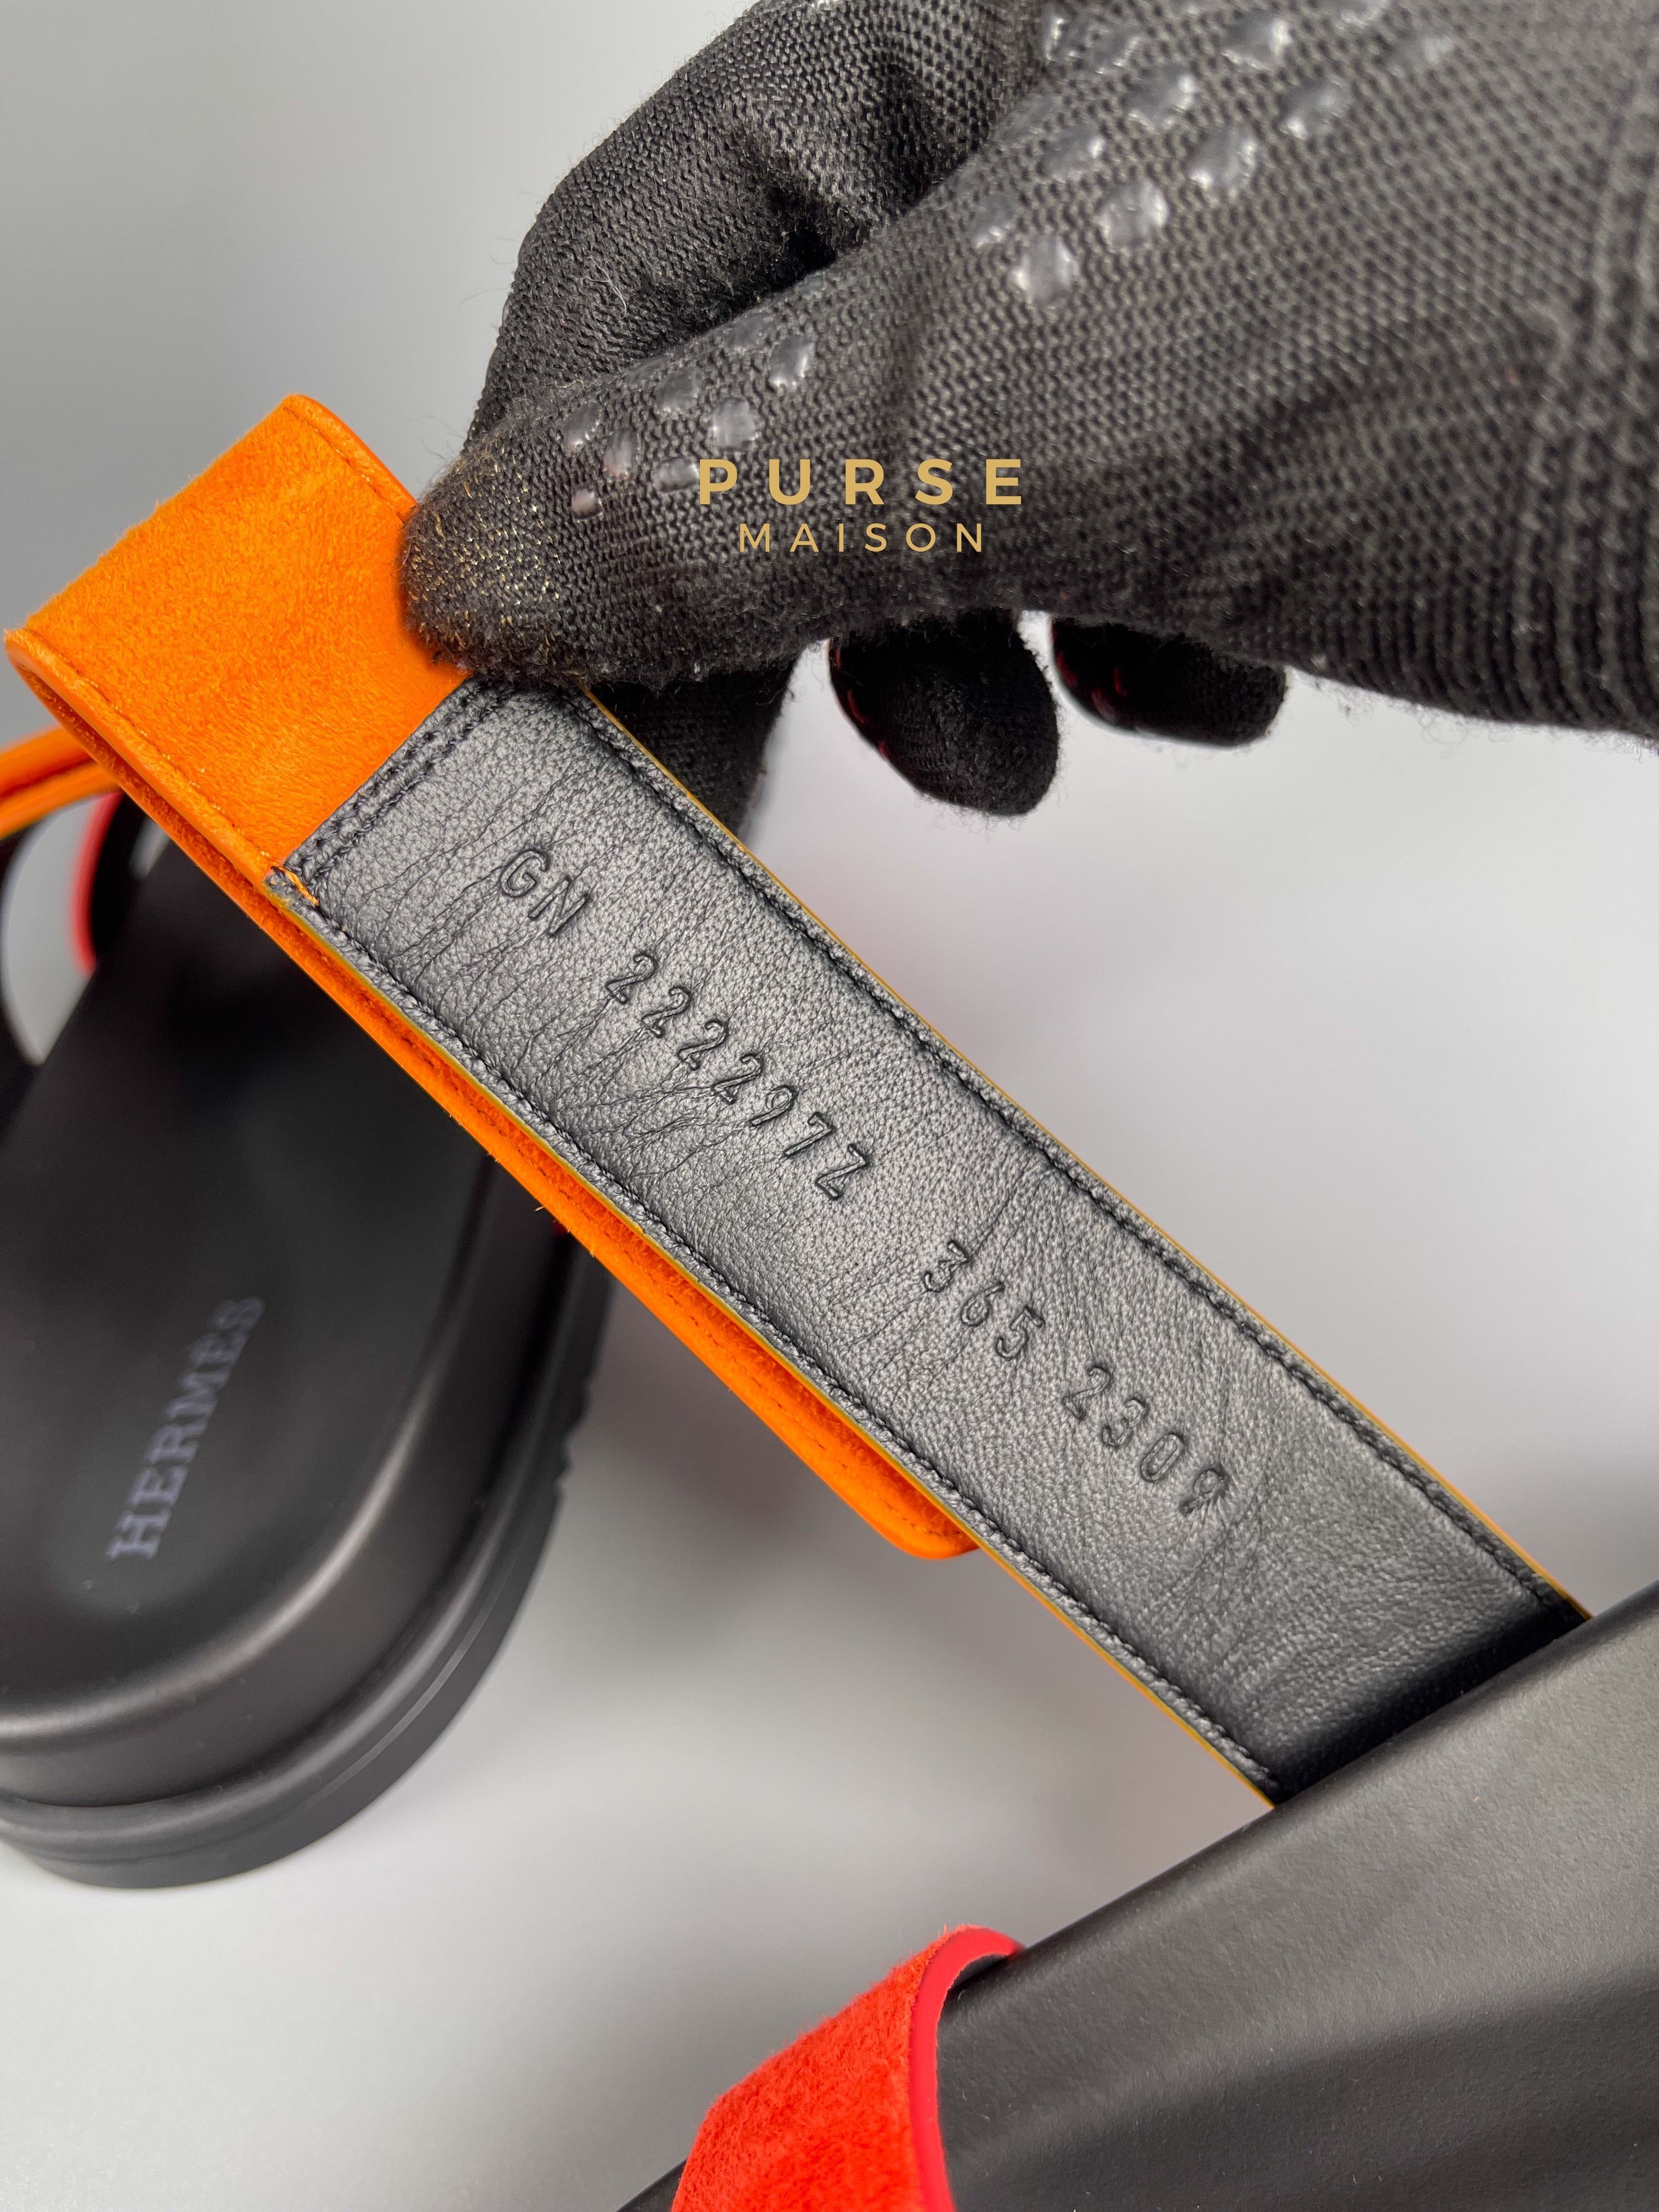 Hermes Chypre Rouge Ecarlate Sunset Sandals Size 36.5 EU (23.5cm) | Purse Maison Luxury Bags Shop